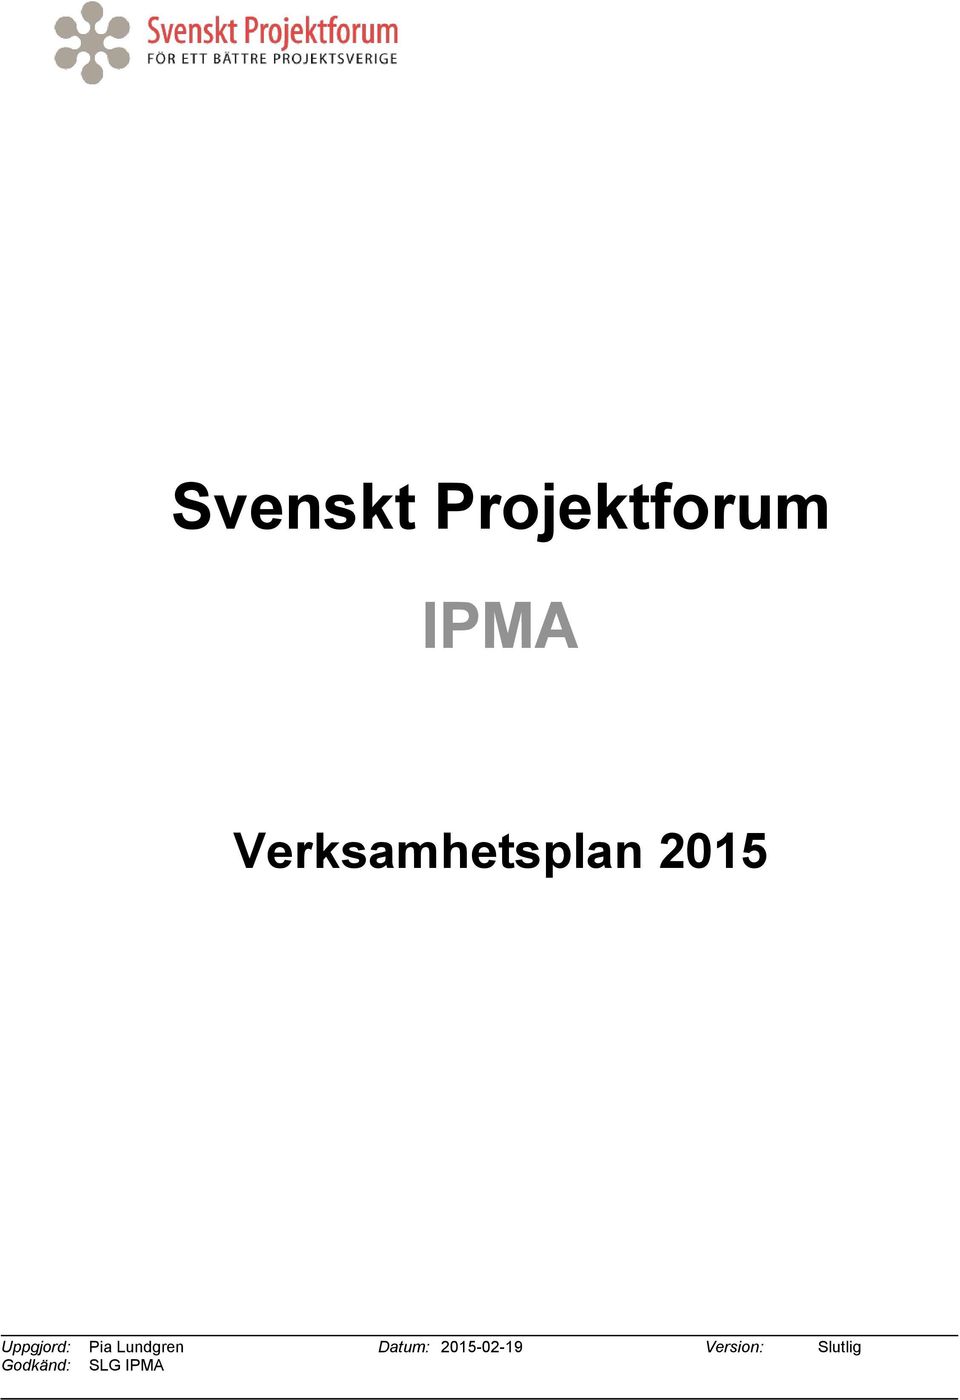 Pia Lundgren Datum: 2015-02-19